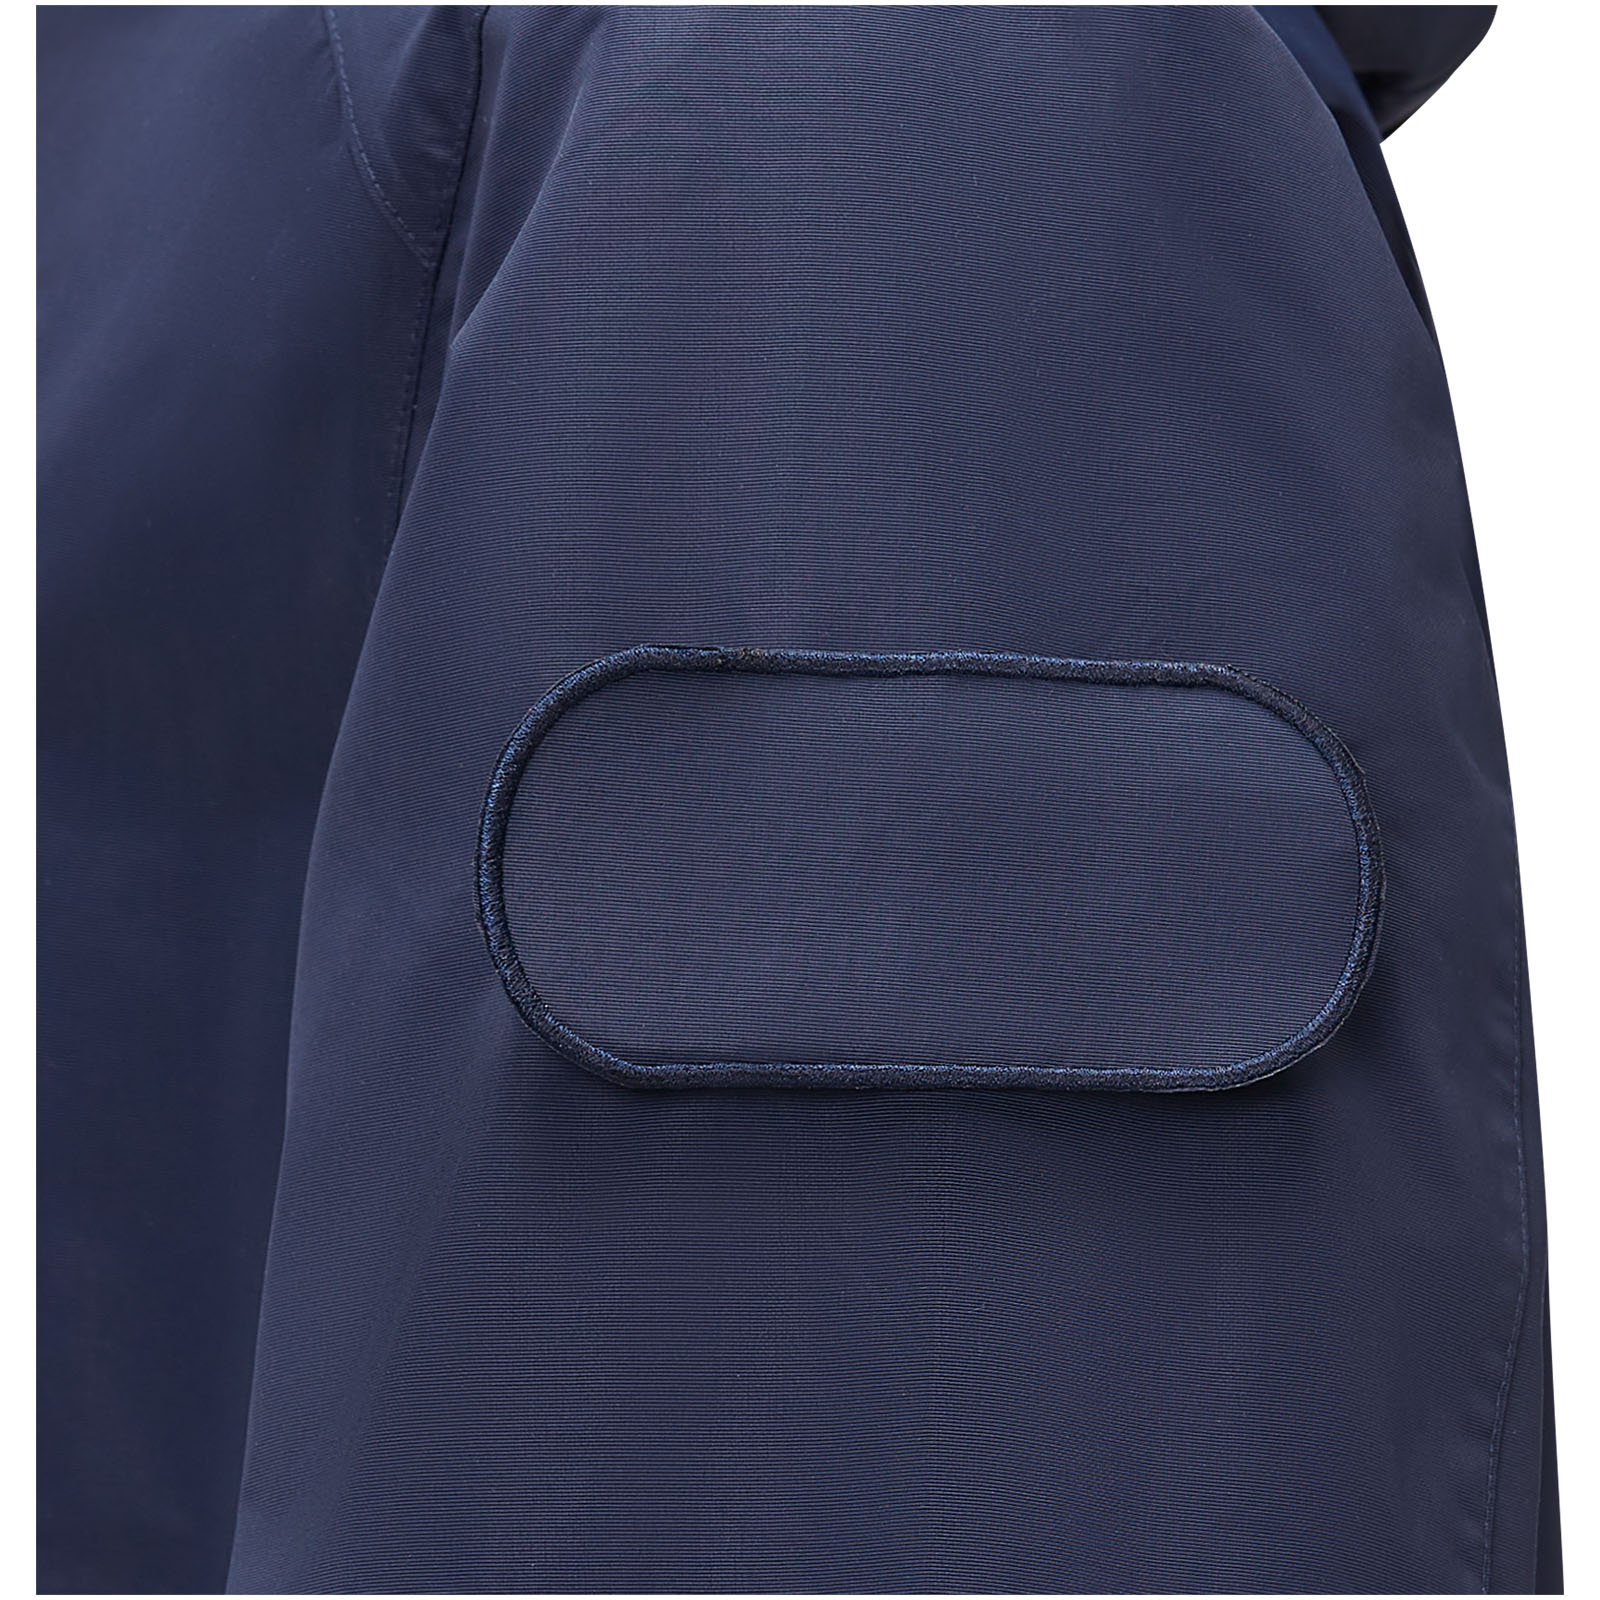 Jackets publicitaires - Kai veste circulaire légère et unisexe recyclée GRS - 3